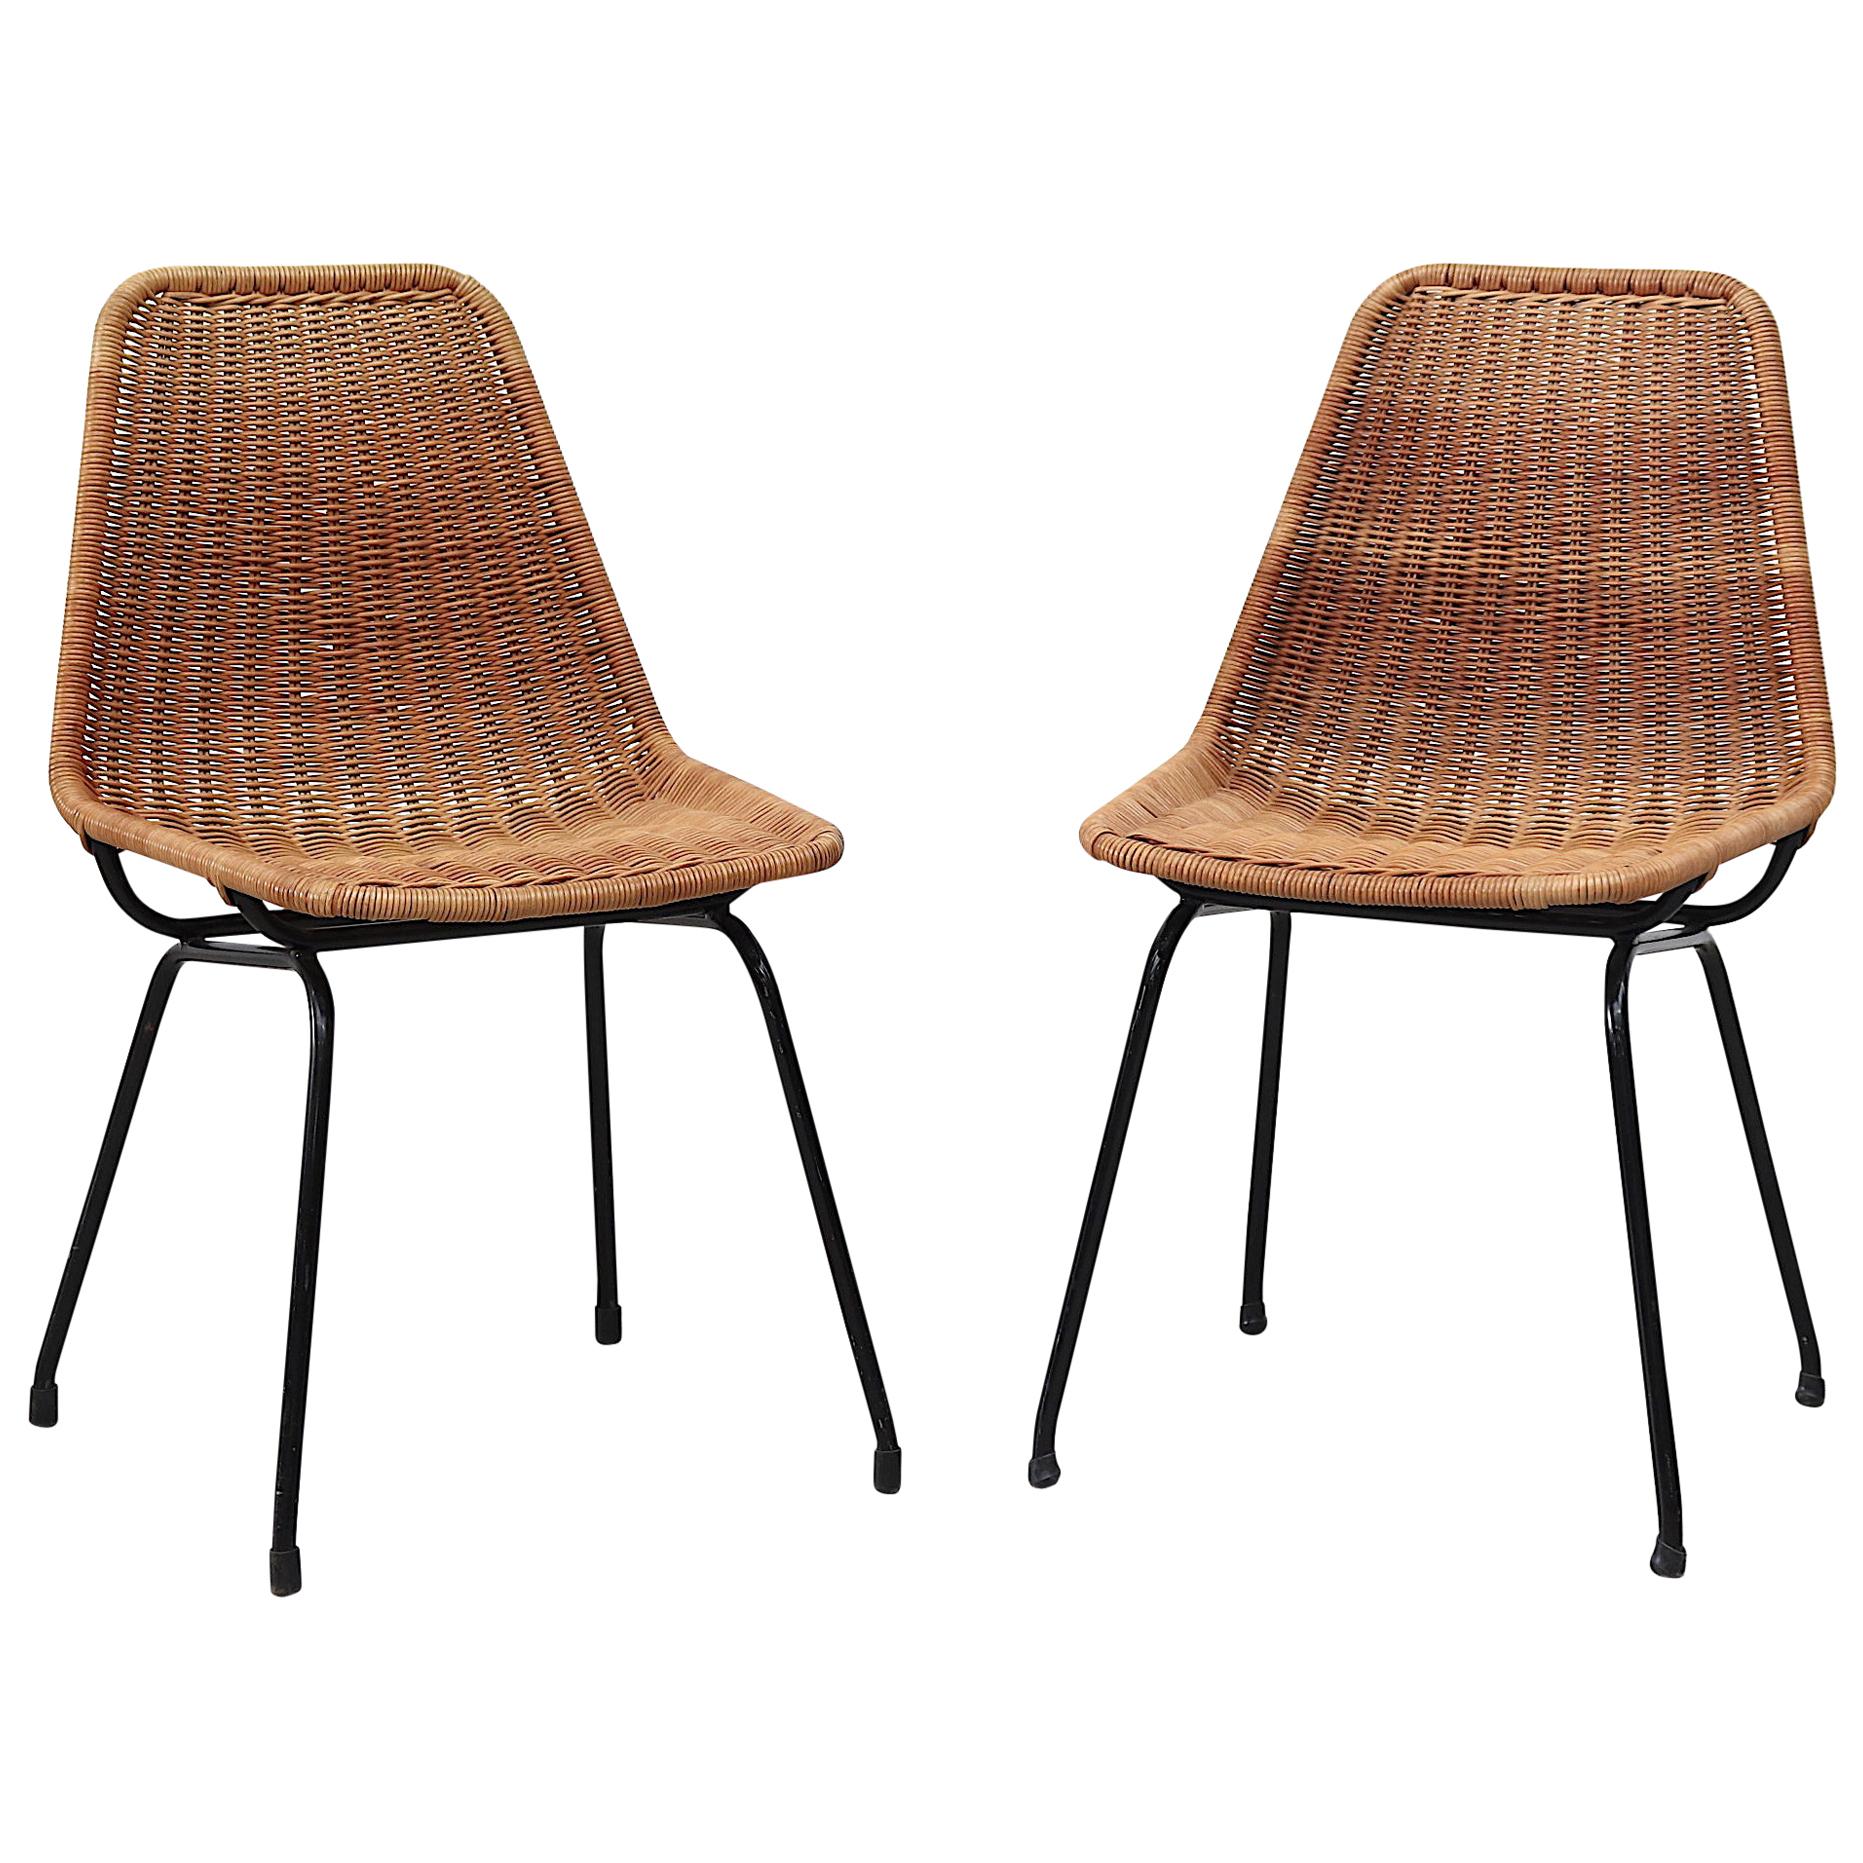 Pair of Dirk van Sliedregt Style Rattan Shell Seat Chair